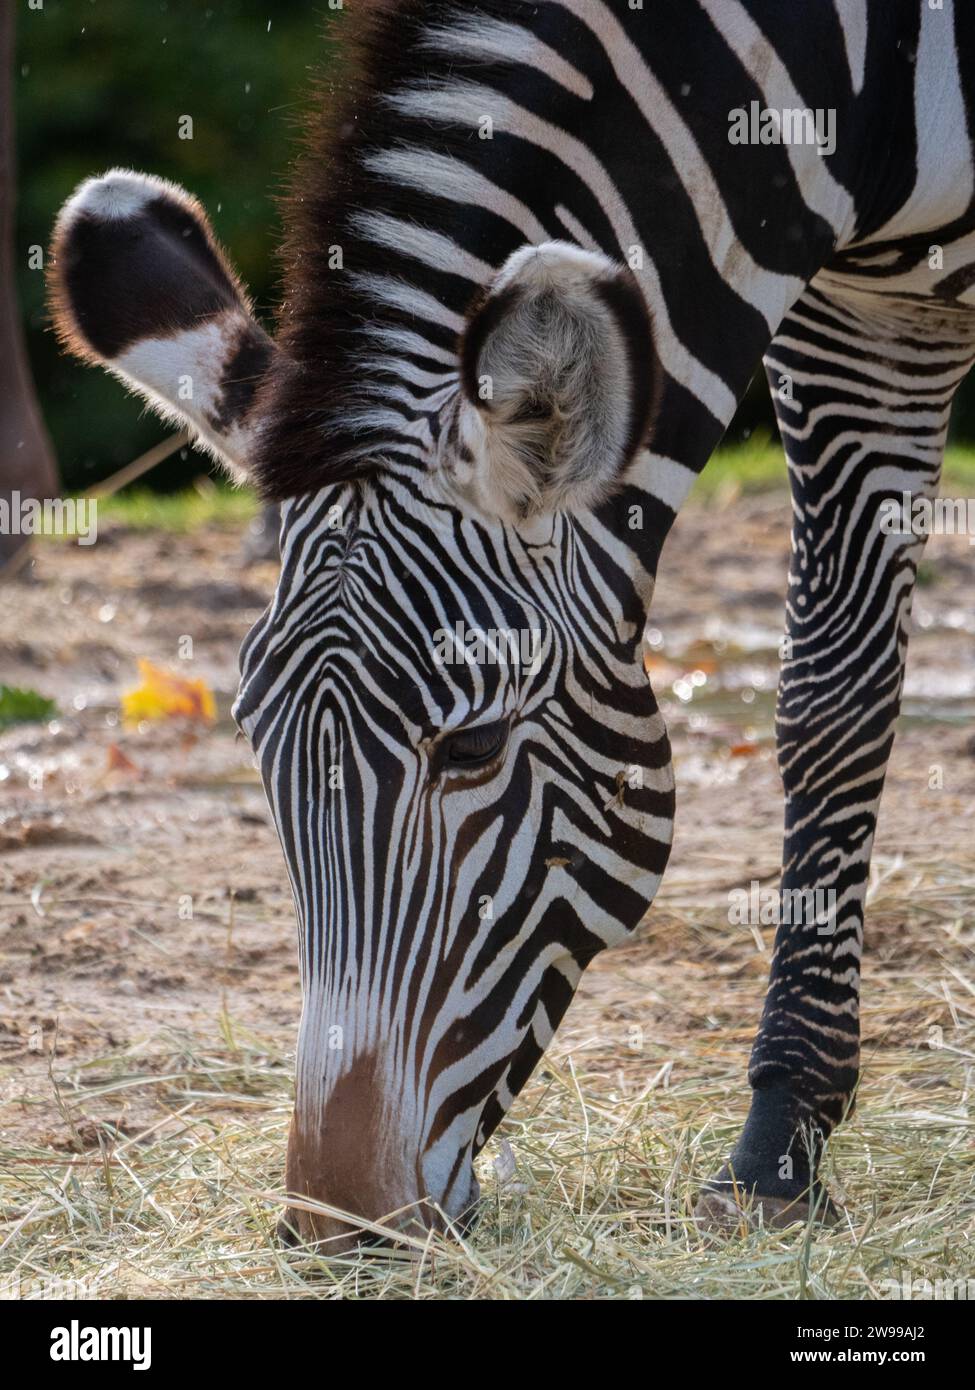 Ein Zebra steht in einem grasbewachsenen Zoo und genießt eine Mahlzeit aus frischem Gras Stockfoto